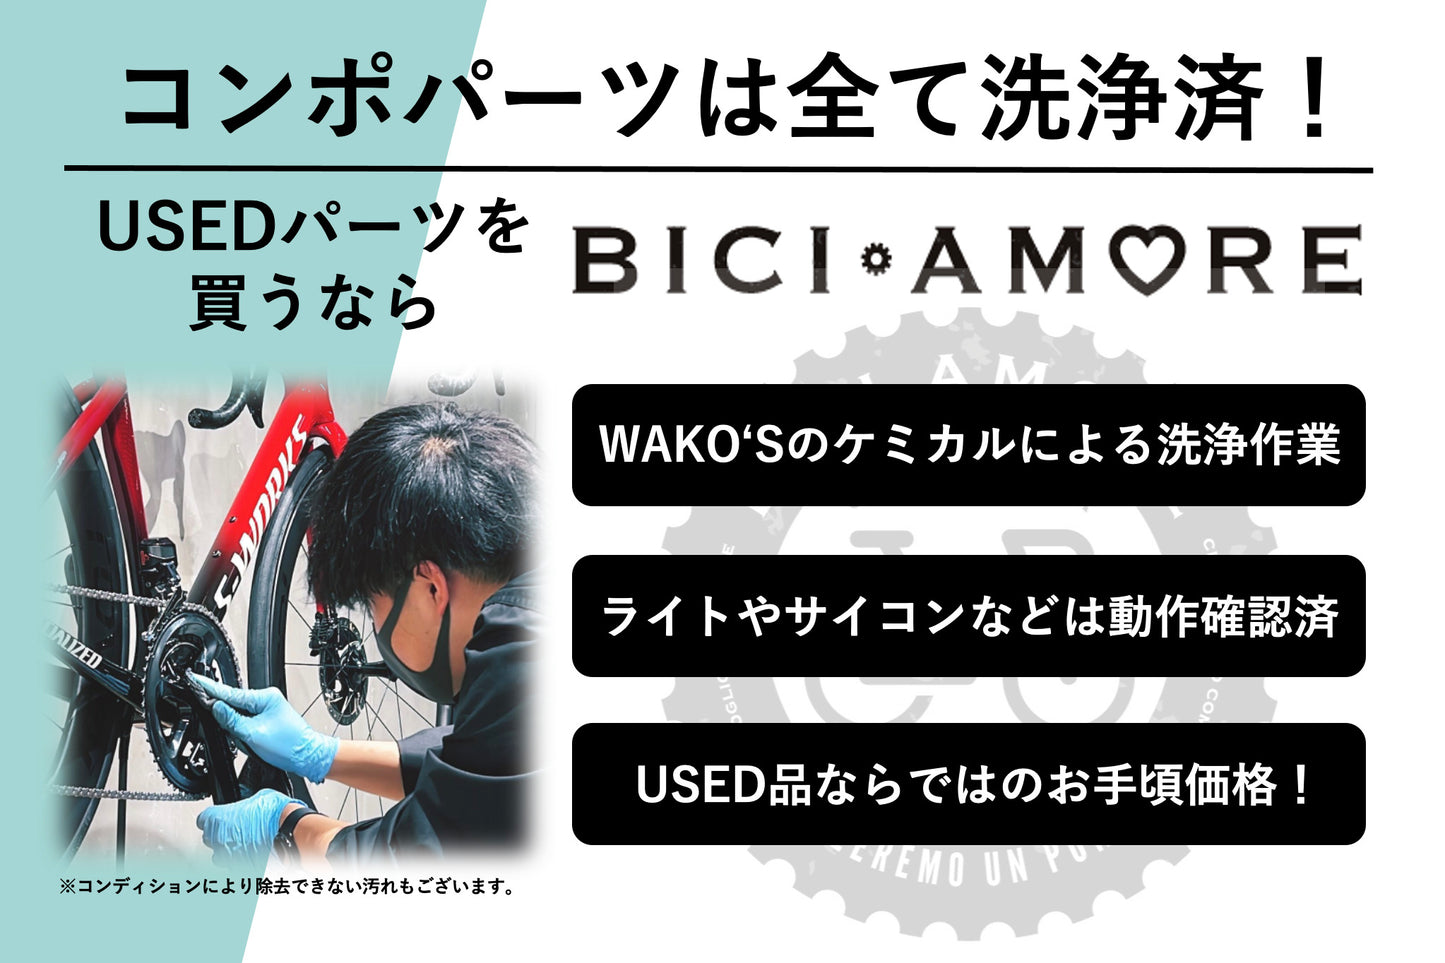 HL141 シマノ SHIMANO 105 FC-R7000 クランクセット 50/34T 170mm ブラック